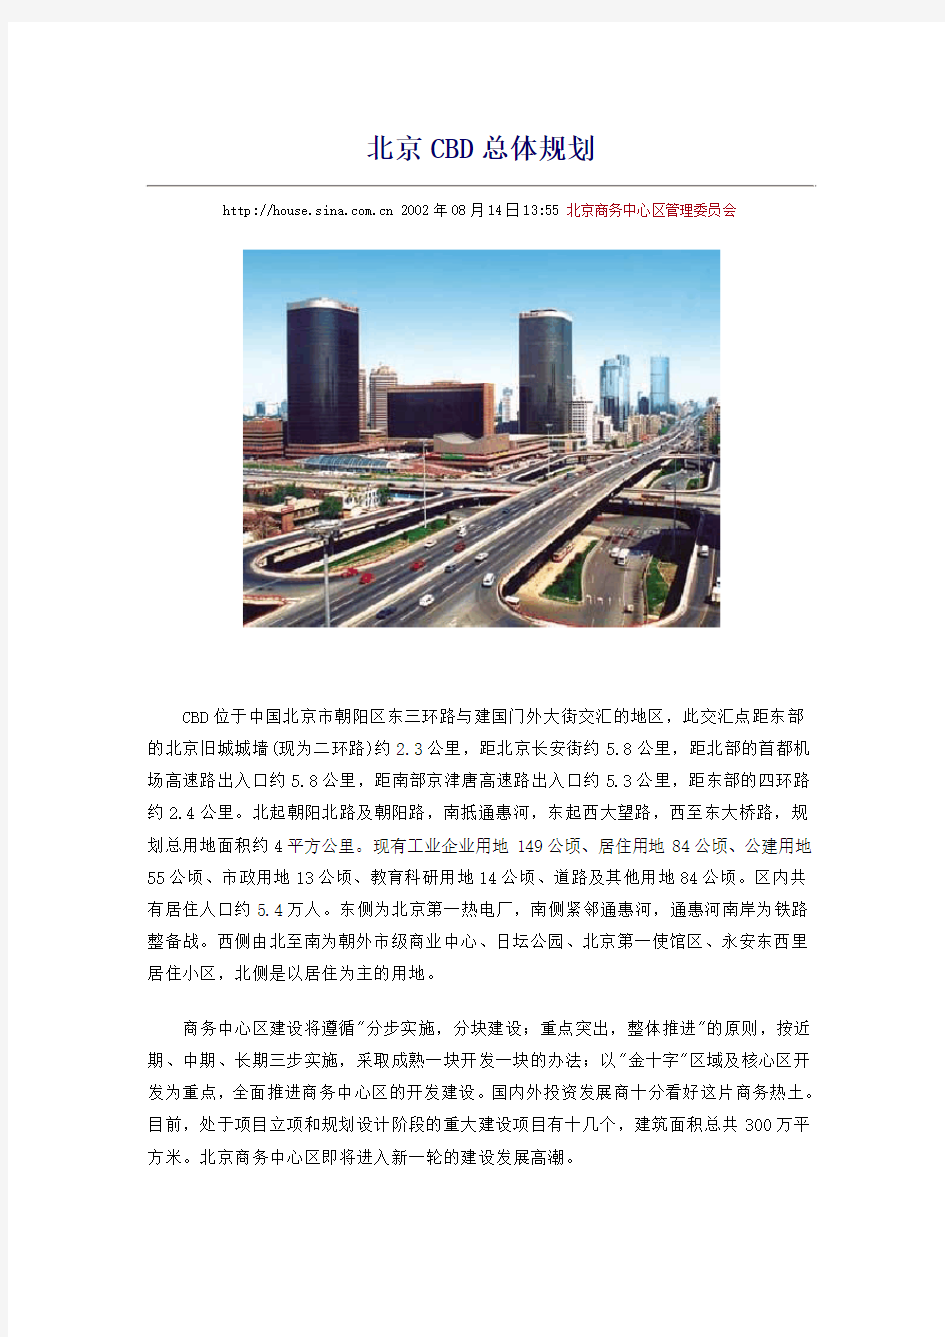 北京CBD总体规划